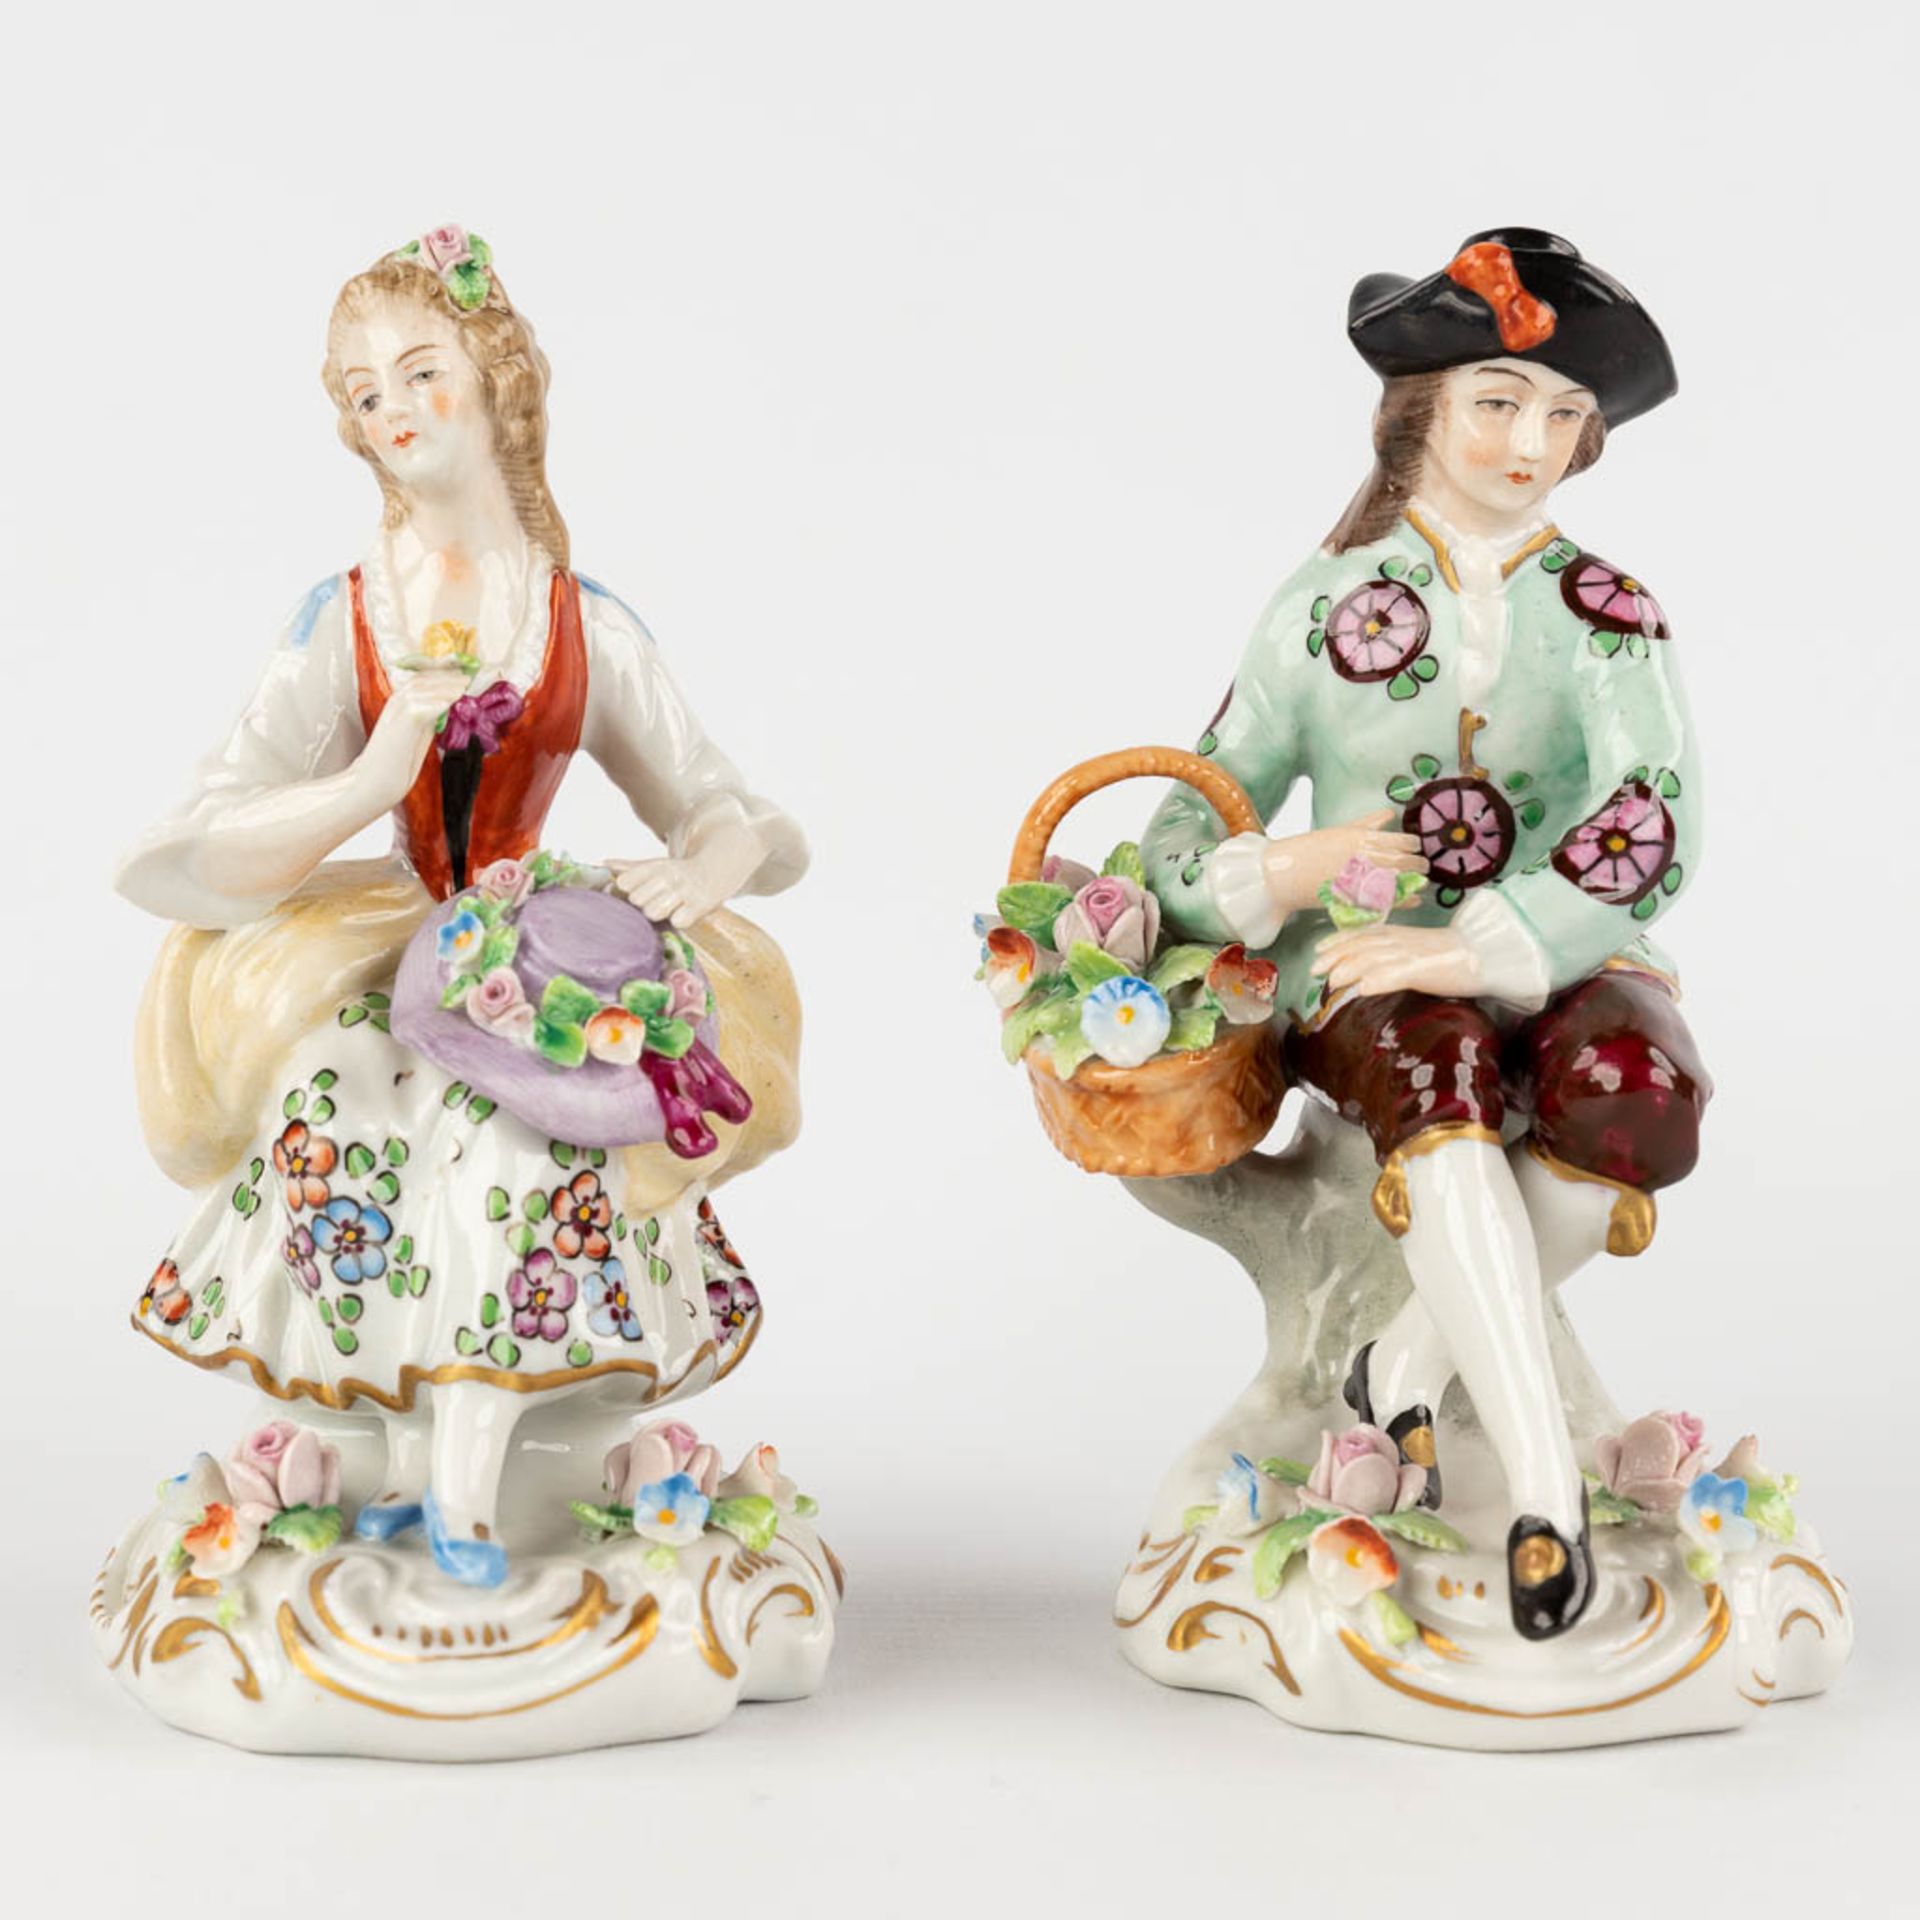 Sitzendorf, 4 figurines, poychrome porcelain. 19th and 20th C. (H:10 x D:9 cm) - Bild 13 aus 20